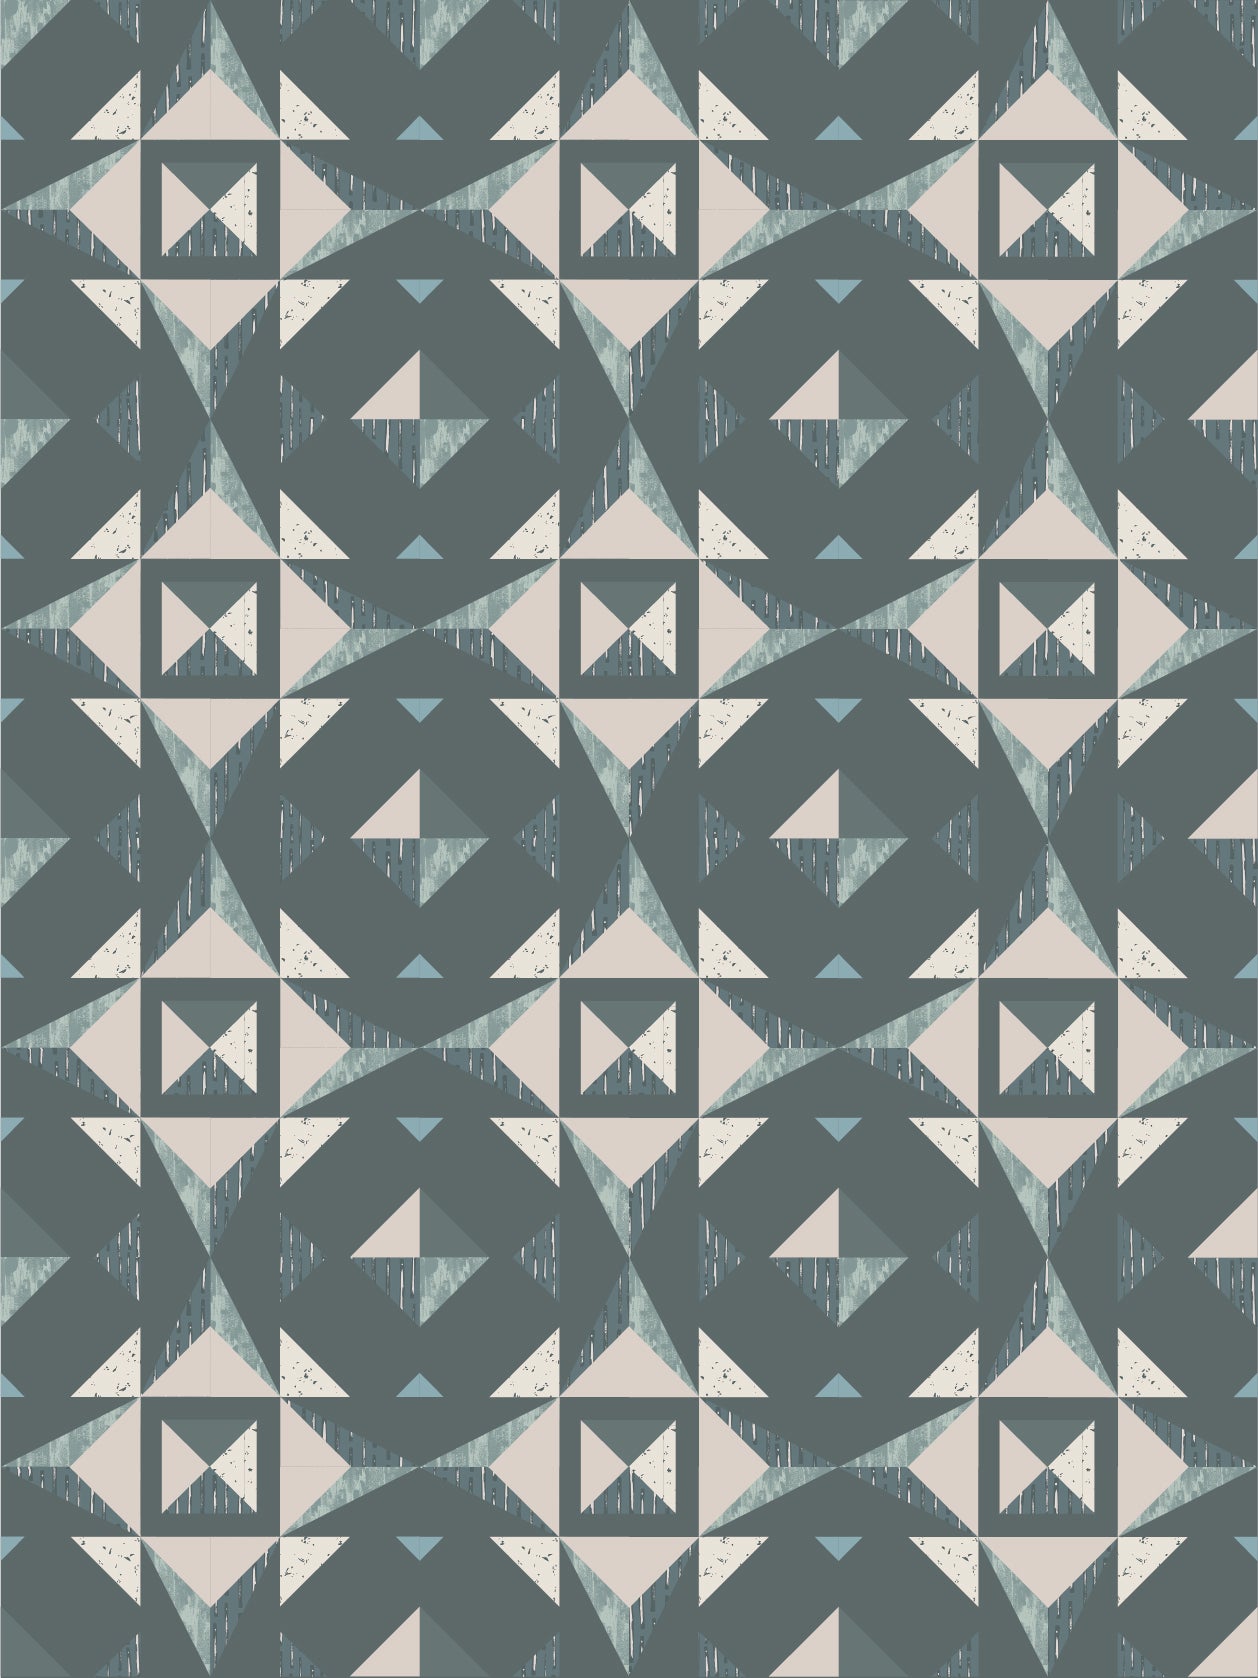 Quilt Pattern - Christalline By Alderwood Studios